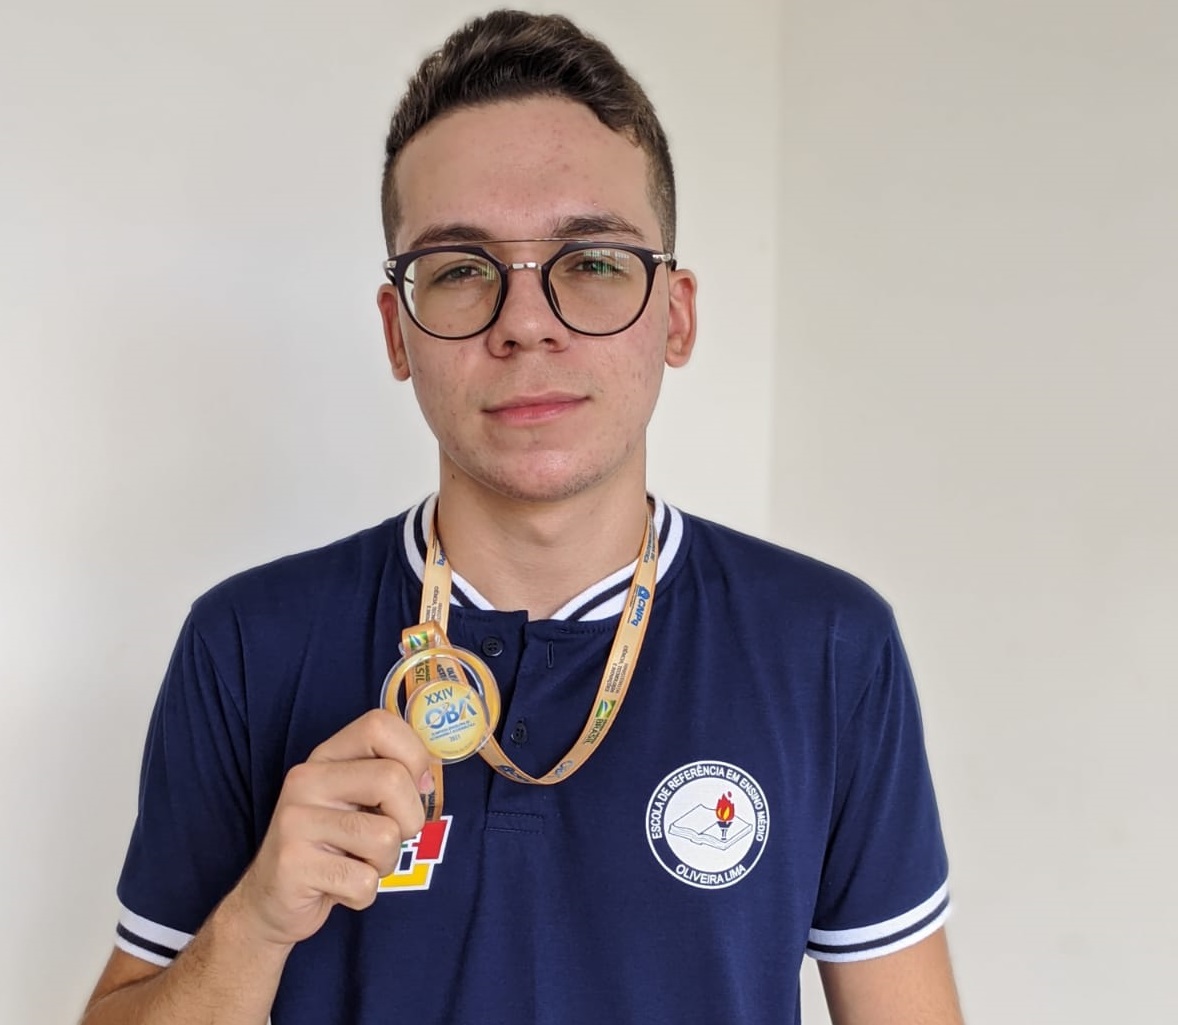 Aluno da Escola de Referência Oliveira Lima ganhou medalha de ouro na OBA 2021 pelo segundo ano seguido